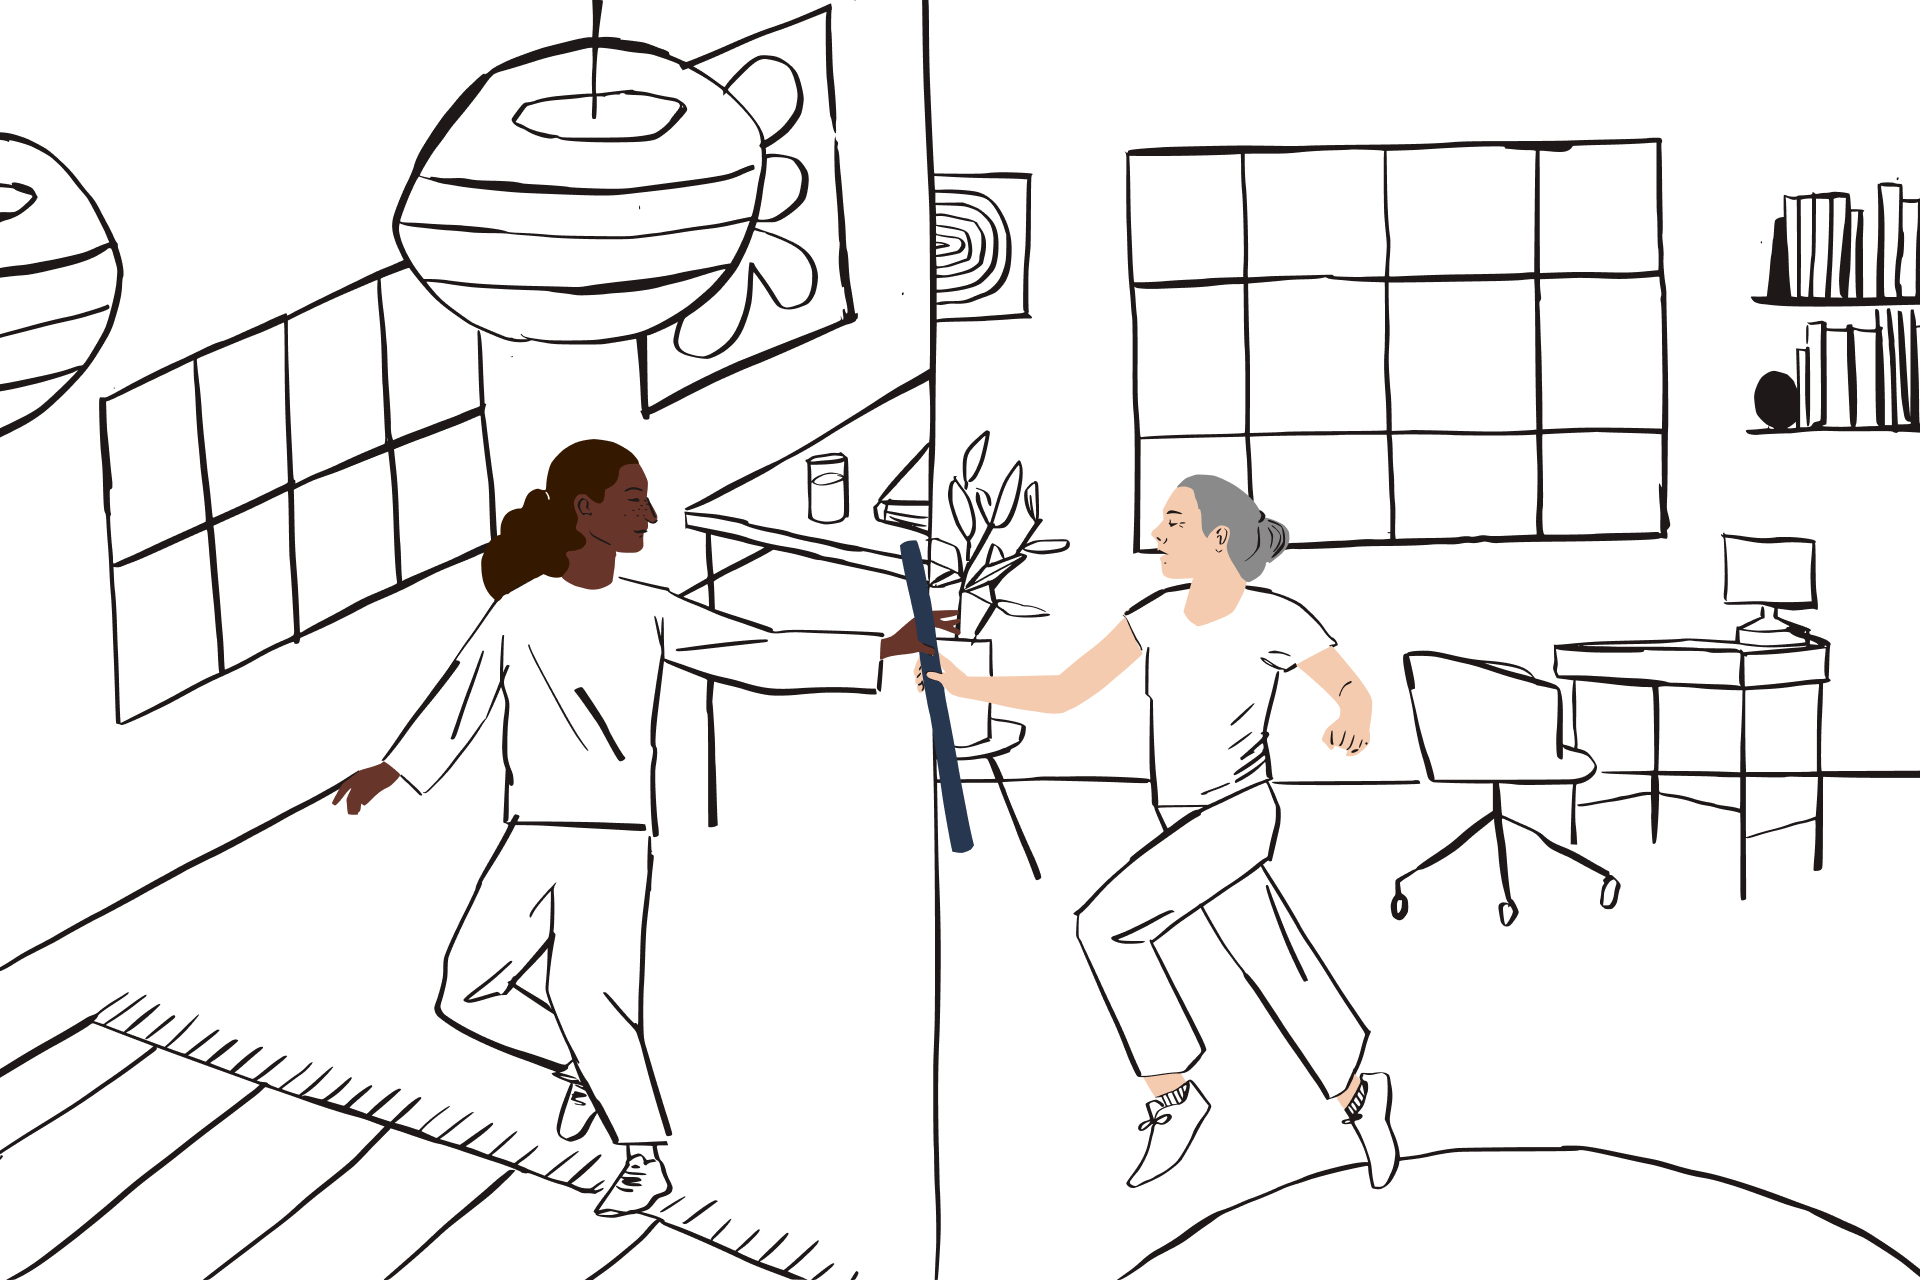 Ilustración en línea de una persona que pasa un bastón desde un marco de oficina en casa a una persona en un espacio diferente